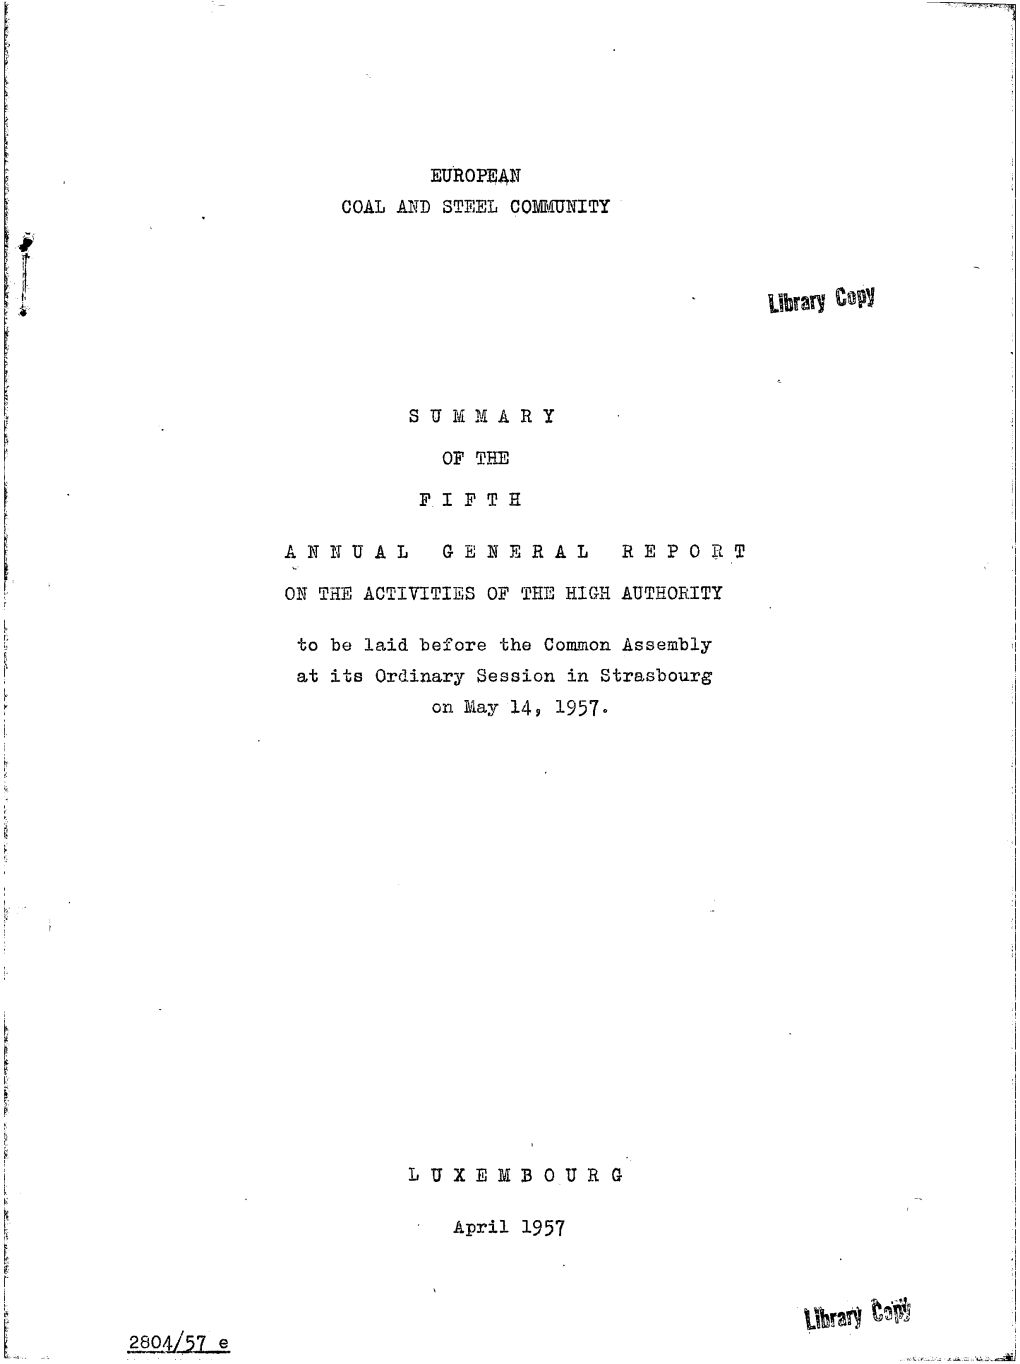 ECSC 5Th GR Summary 1957.Pdf